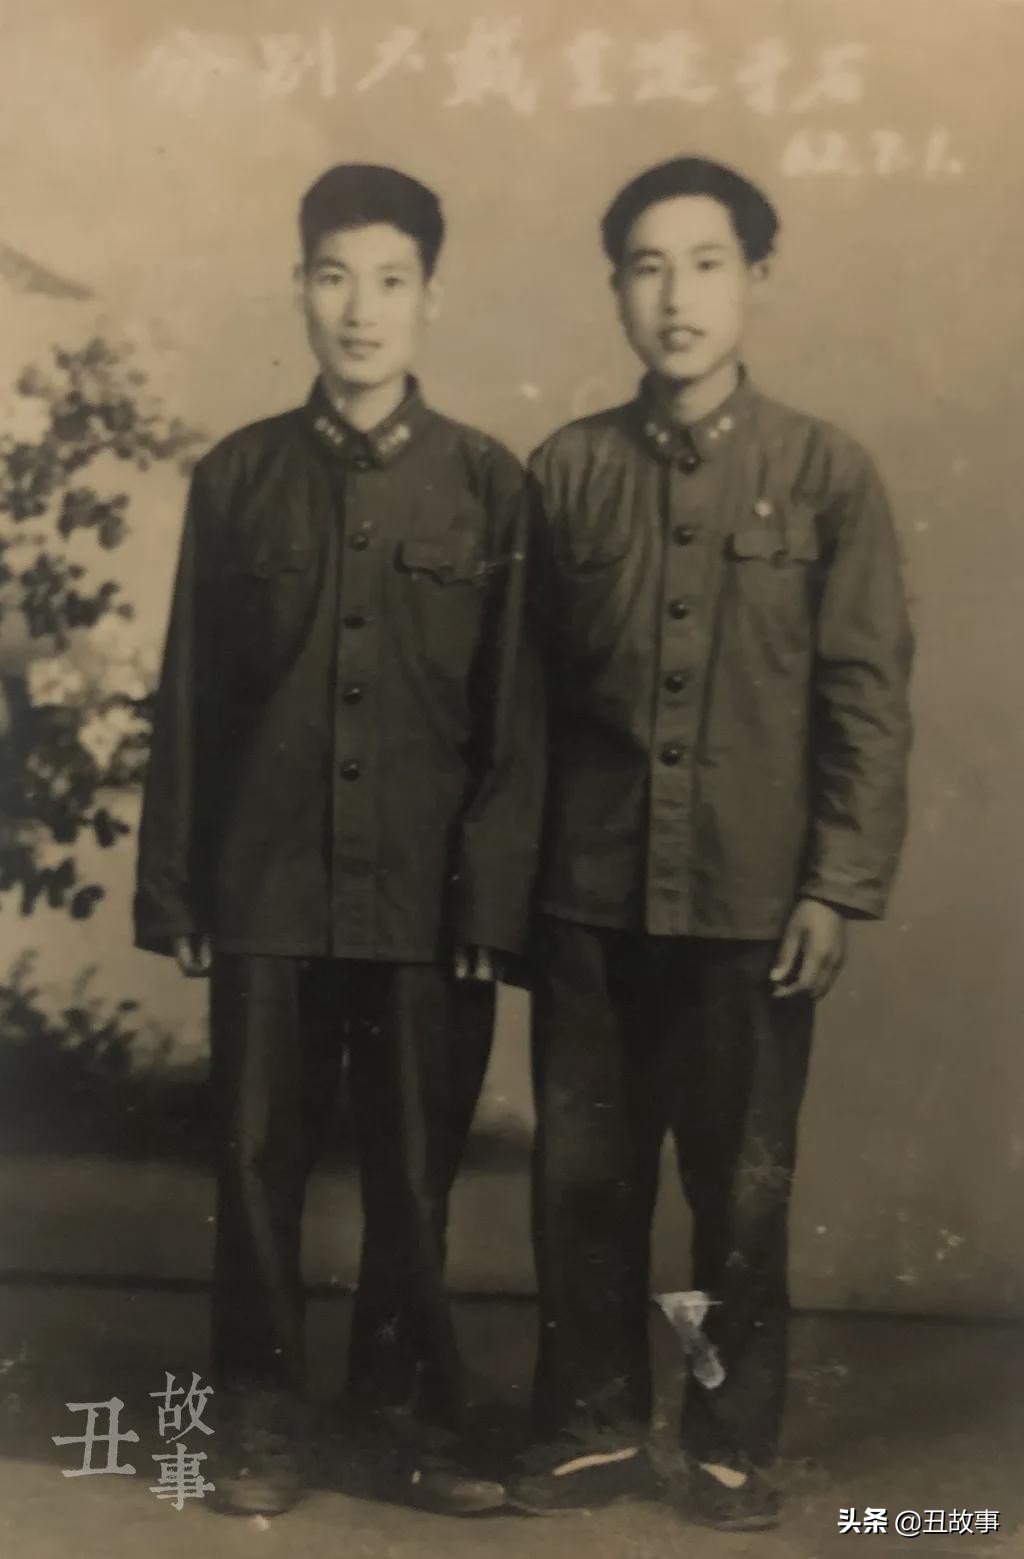 我是中国铁道兵，从成昆铁路到大兴安岭，两次死里逃生